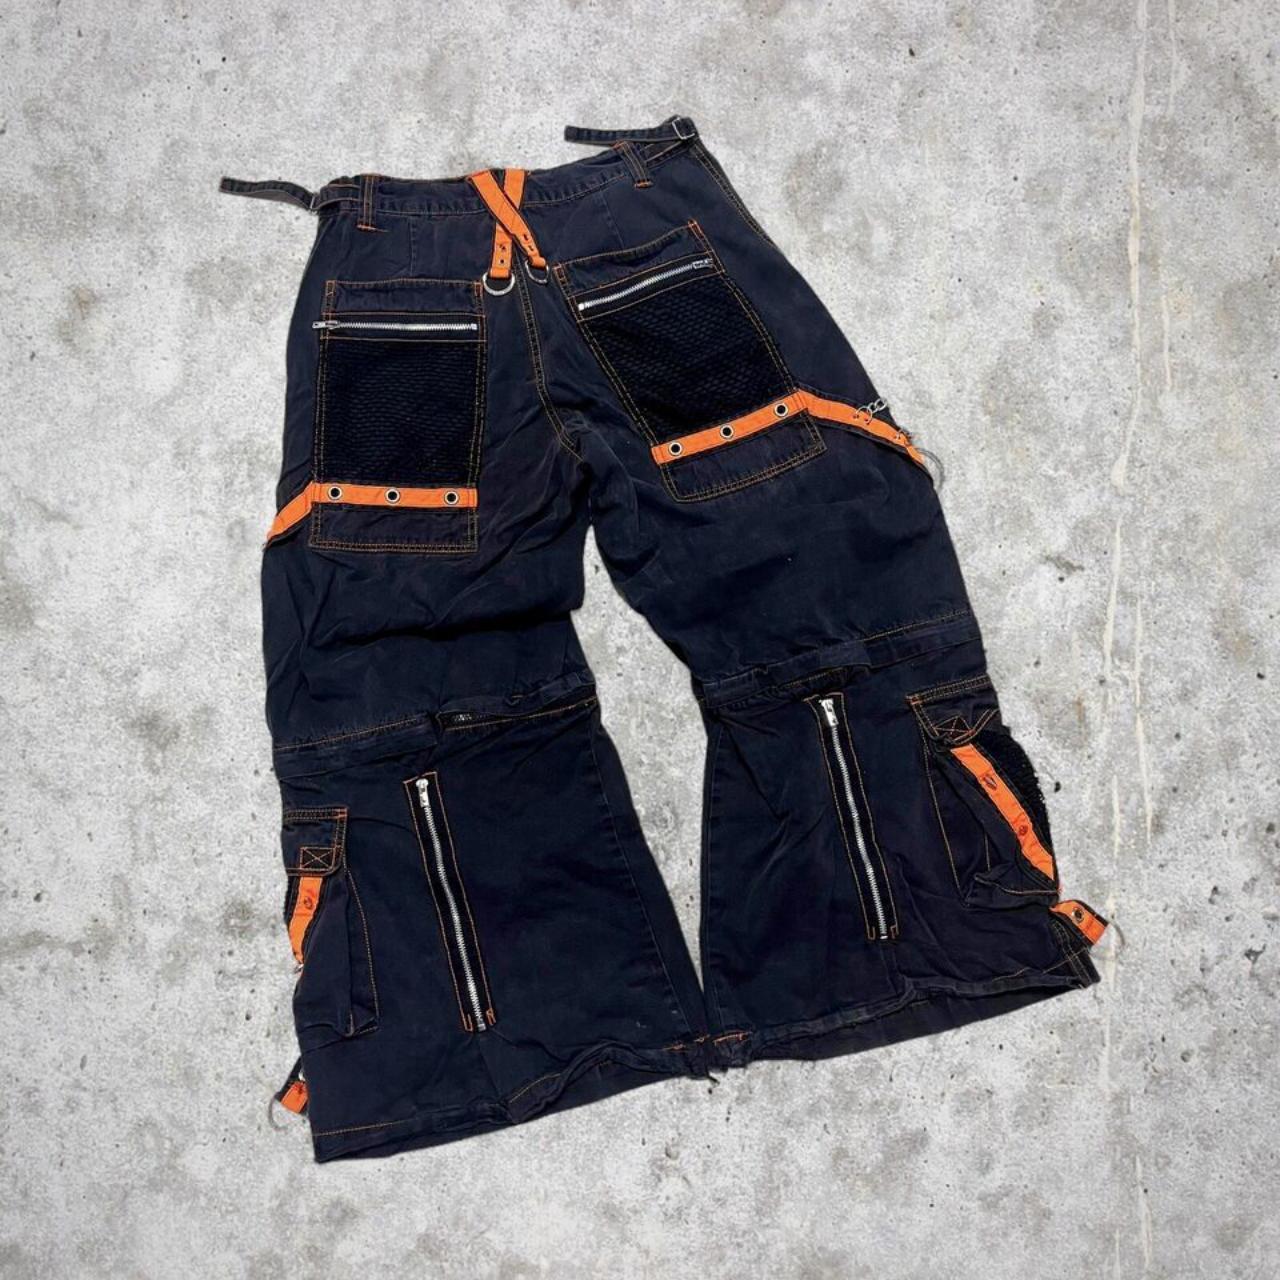 Vintage Tripp NYC Pants Large Goth Orange 90s Y2k... - Depop